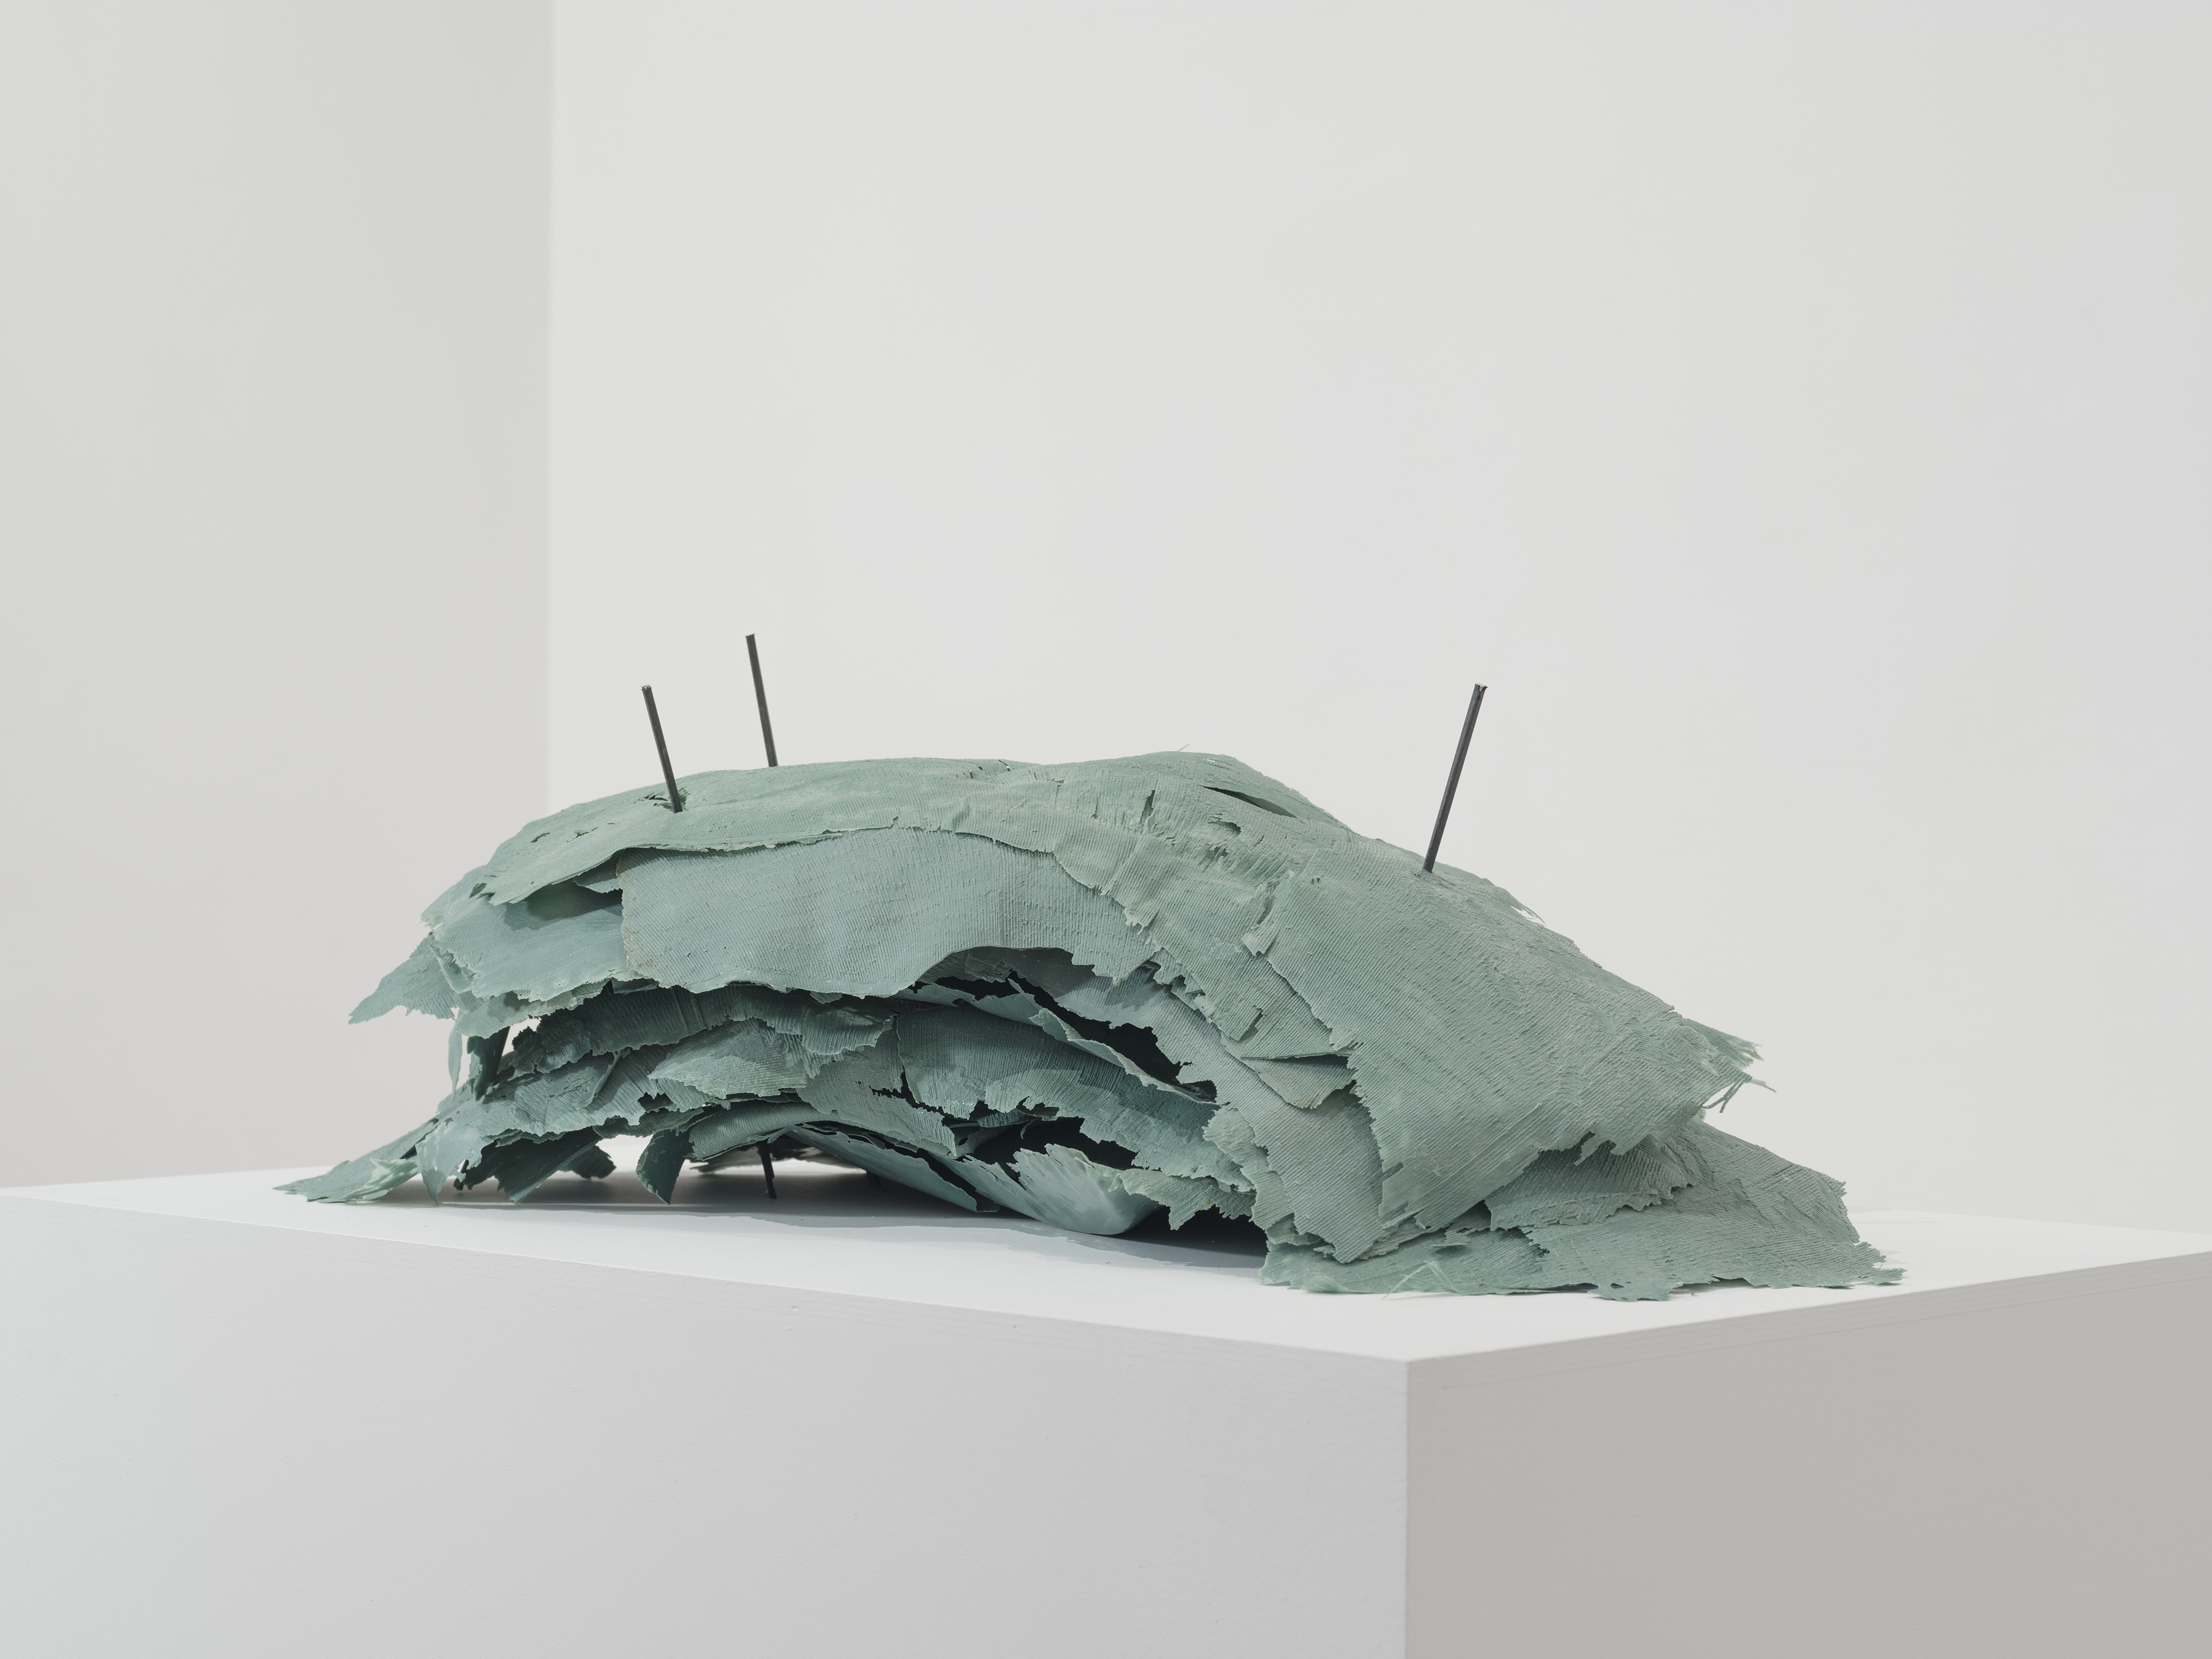 Κώστας Σαχπάζης, Of Item’s free will, 2016 Ρητίνη, μπρούντζος, πλαστικό 30 x 85 x 60 εκ